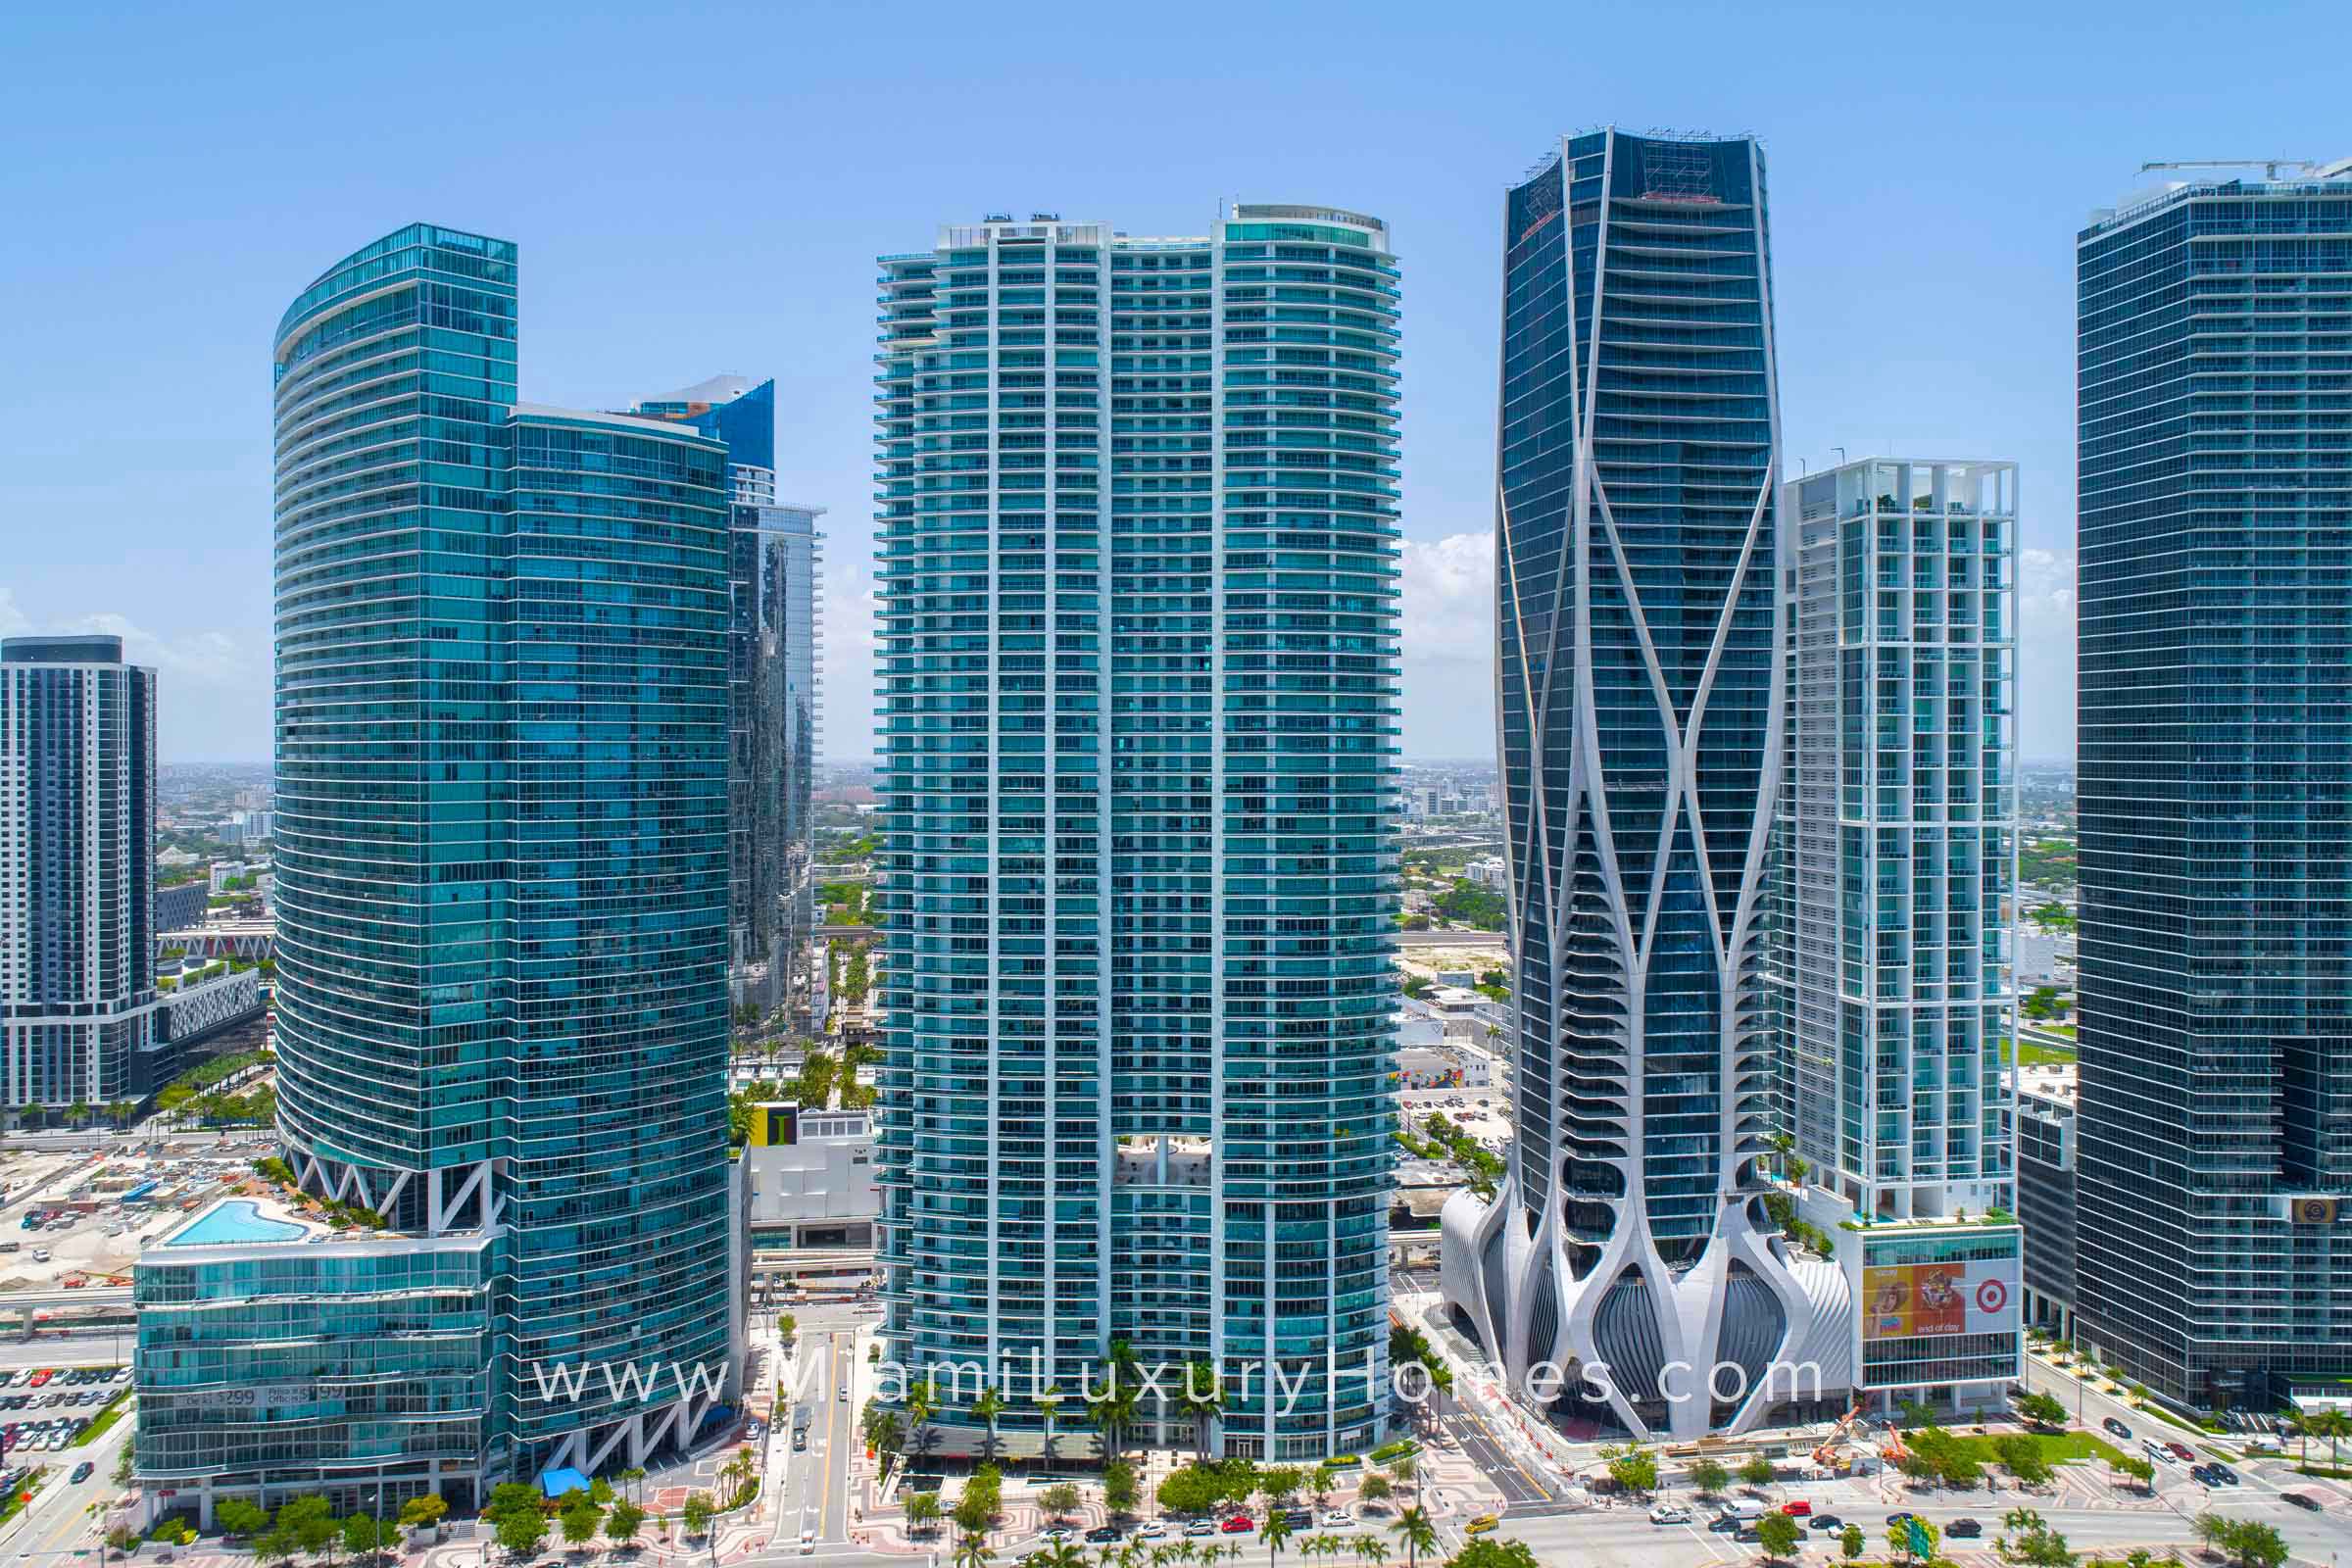 900 Biscayne Bay Condo Building in Miami